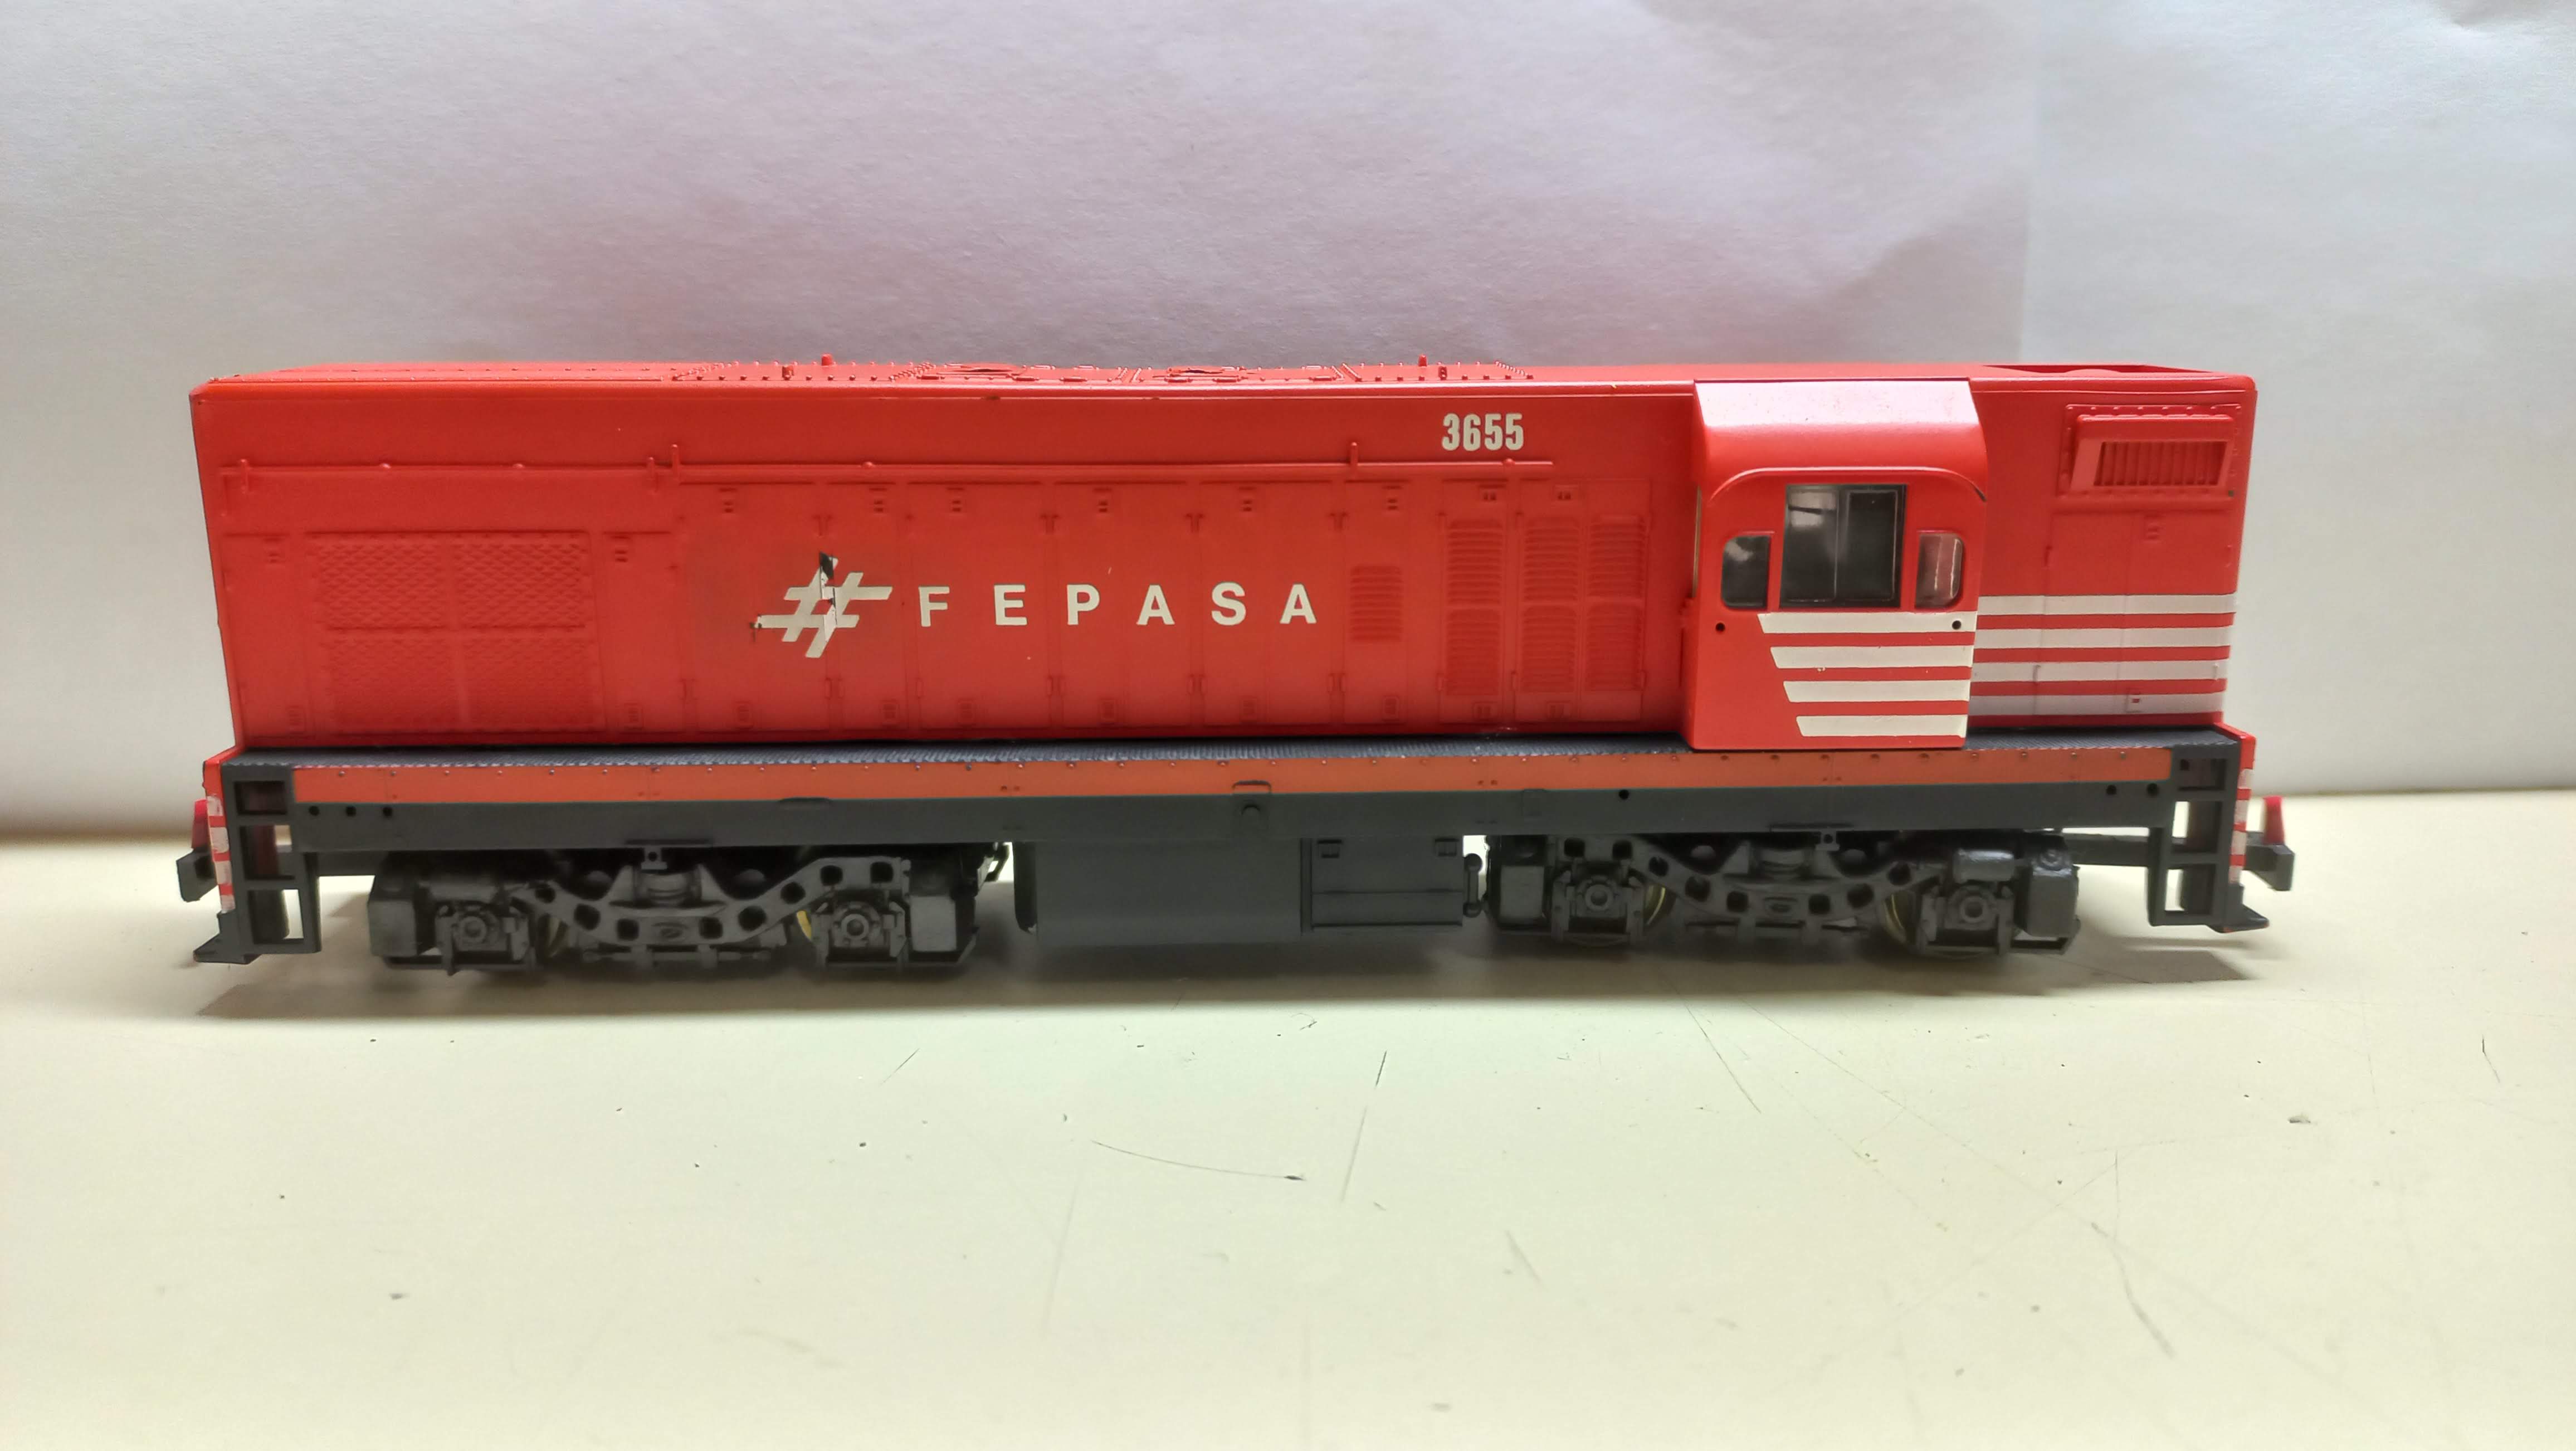 Frateschi - Locomotiva G12 FEPASA # 3655 OBS: CARROCERIA QUEBRADA